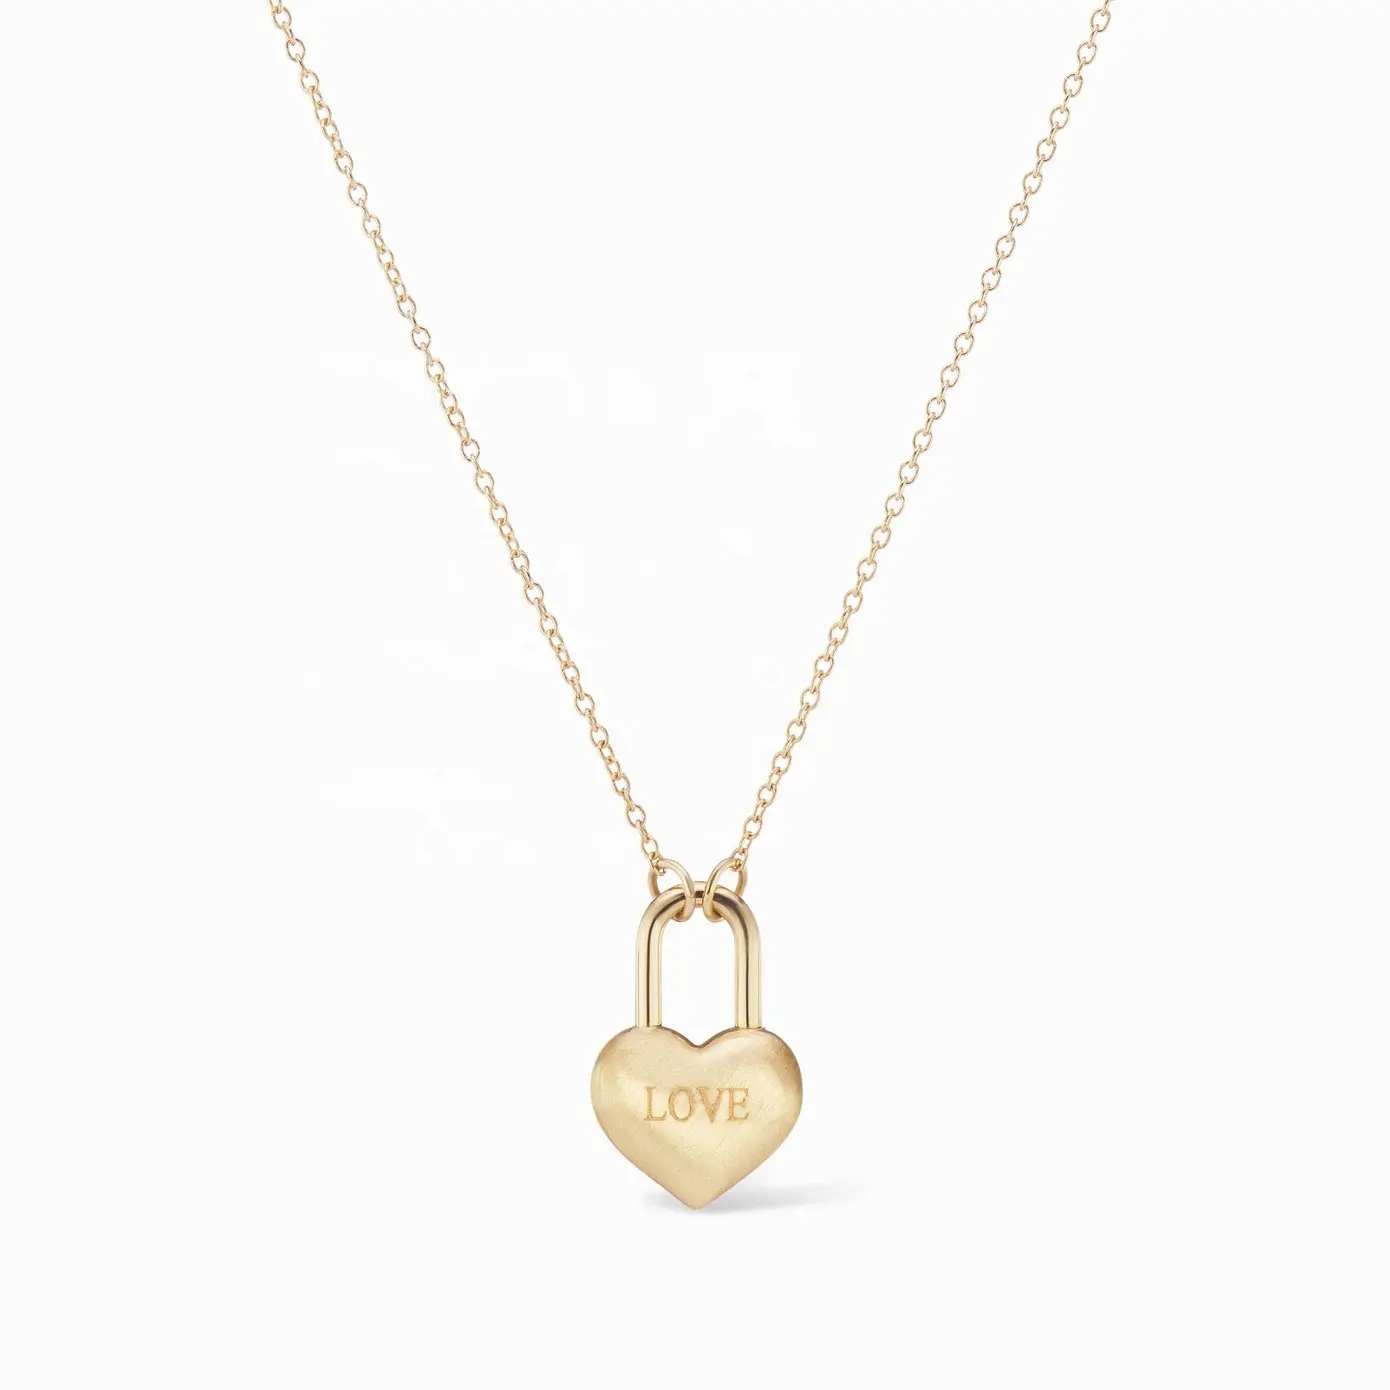 Производитель ювелирных изделий на заказ, простое серебро 925 пробы, позолоченное сердце, ожерелье с замком Love